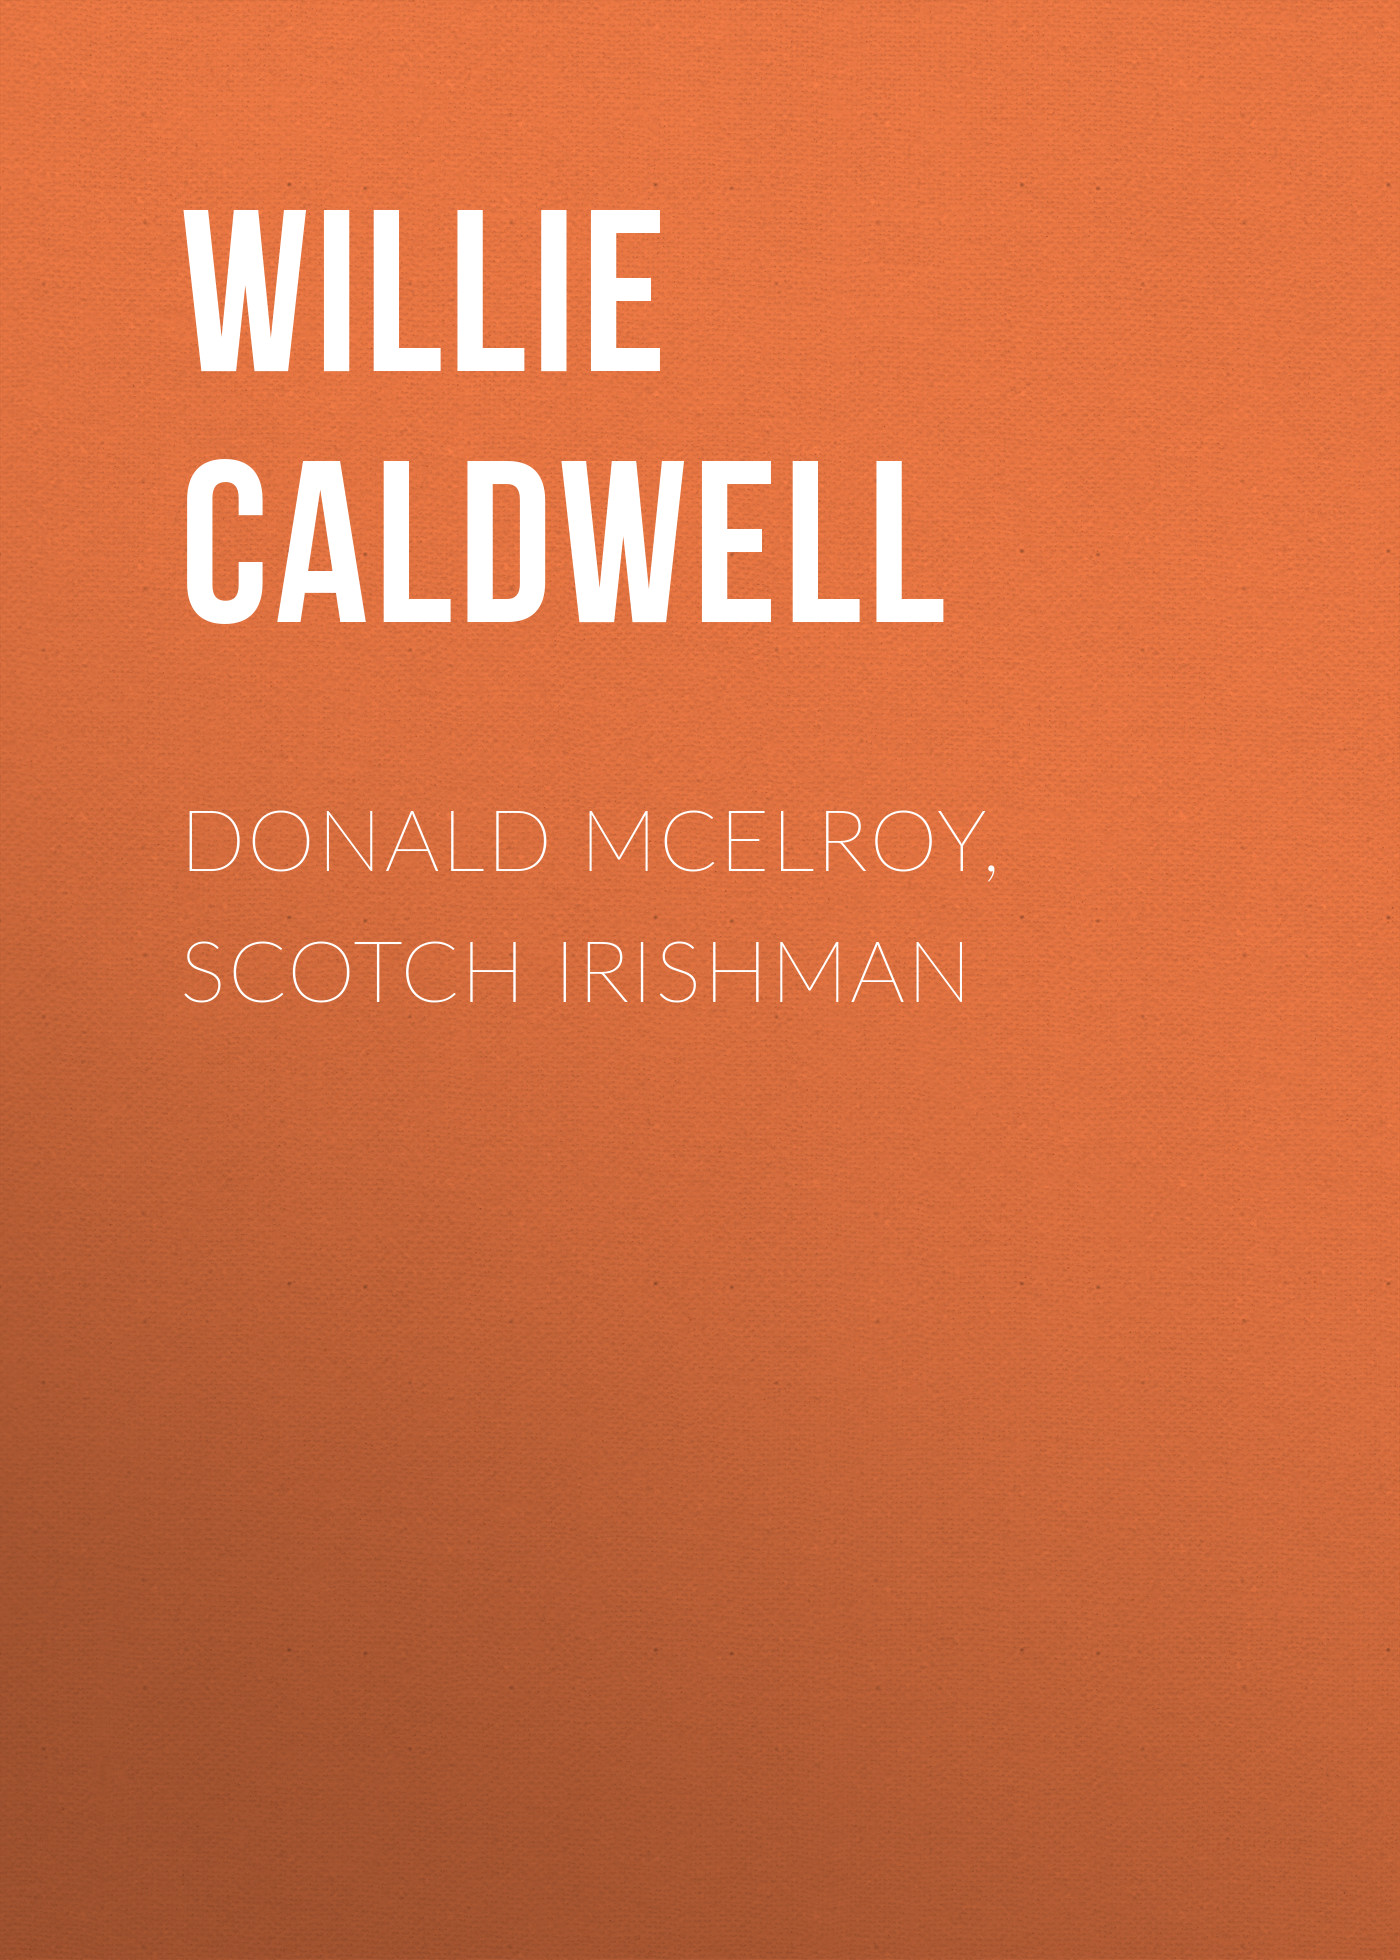 Книга Donald McElroy, Scotch Irishman из серии , созданная Willie Caldwell, может относится к жанру Зарубежная старинная литература, Зарубежная классика, Историческая литература. Стоимость электронной книги Donald McElroy, Scotch Irishman с идентификатором 24172068 составляет 0.90 руб.